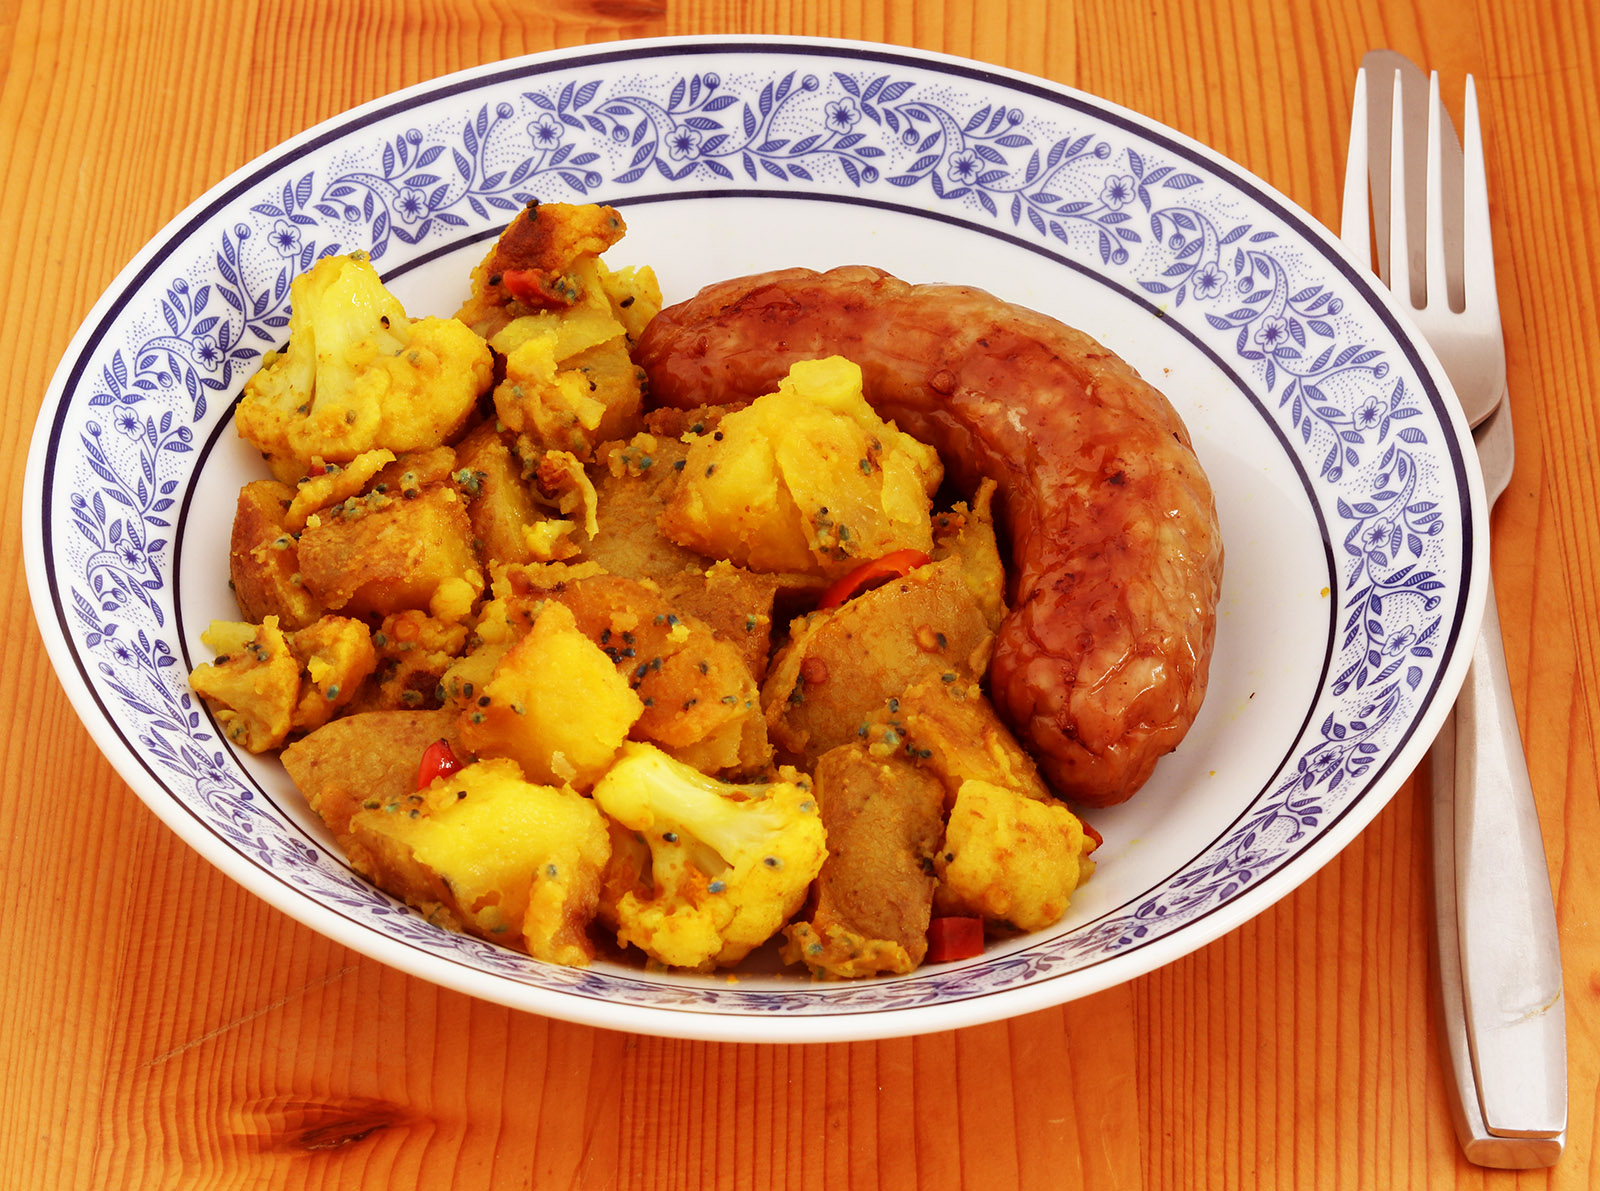 Pork leek with curry s.jpg